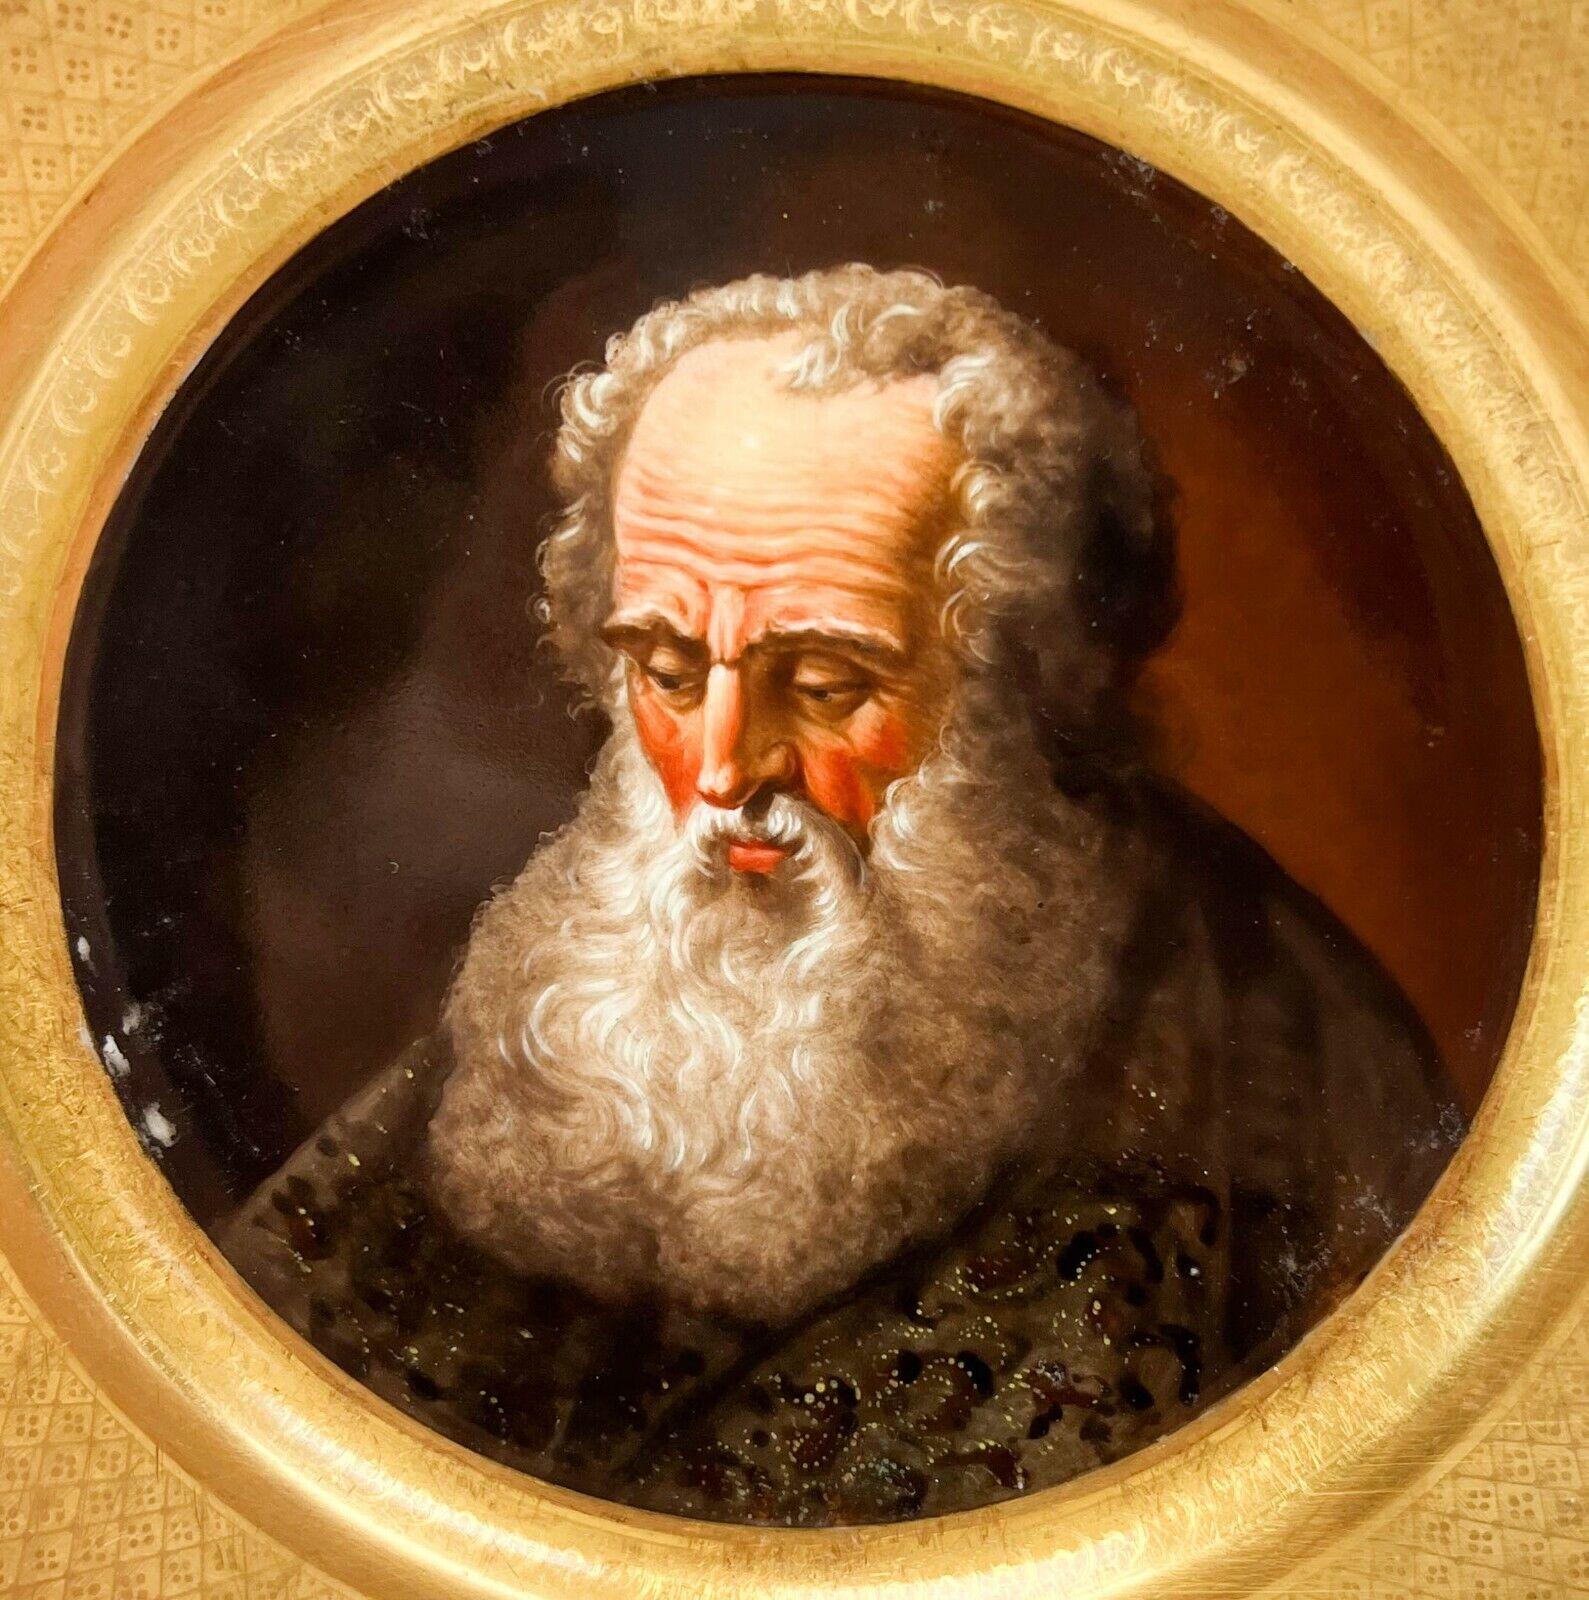 Denuelle France plaque de cabinet portrait en porcelaine peinte à la main Galileo c. 1820

Un fond doré sur le bord, ciselé de têtes de fleurs et de treillis, un portrait finement peint de Galilée au centre. Marqué Denuelle Rue de Crussol a Paris